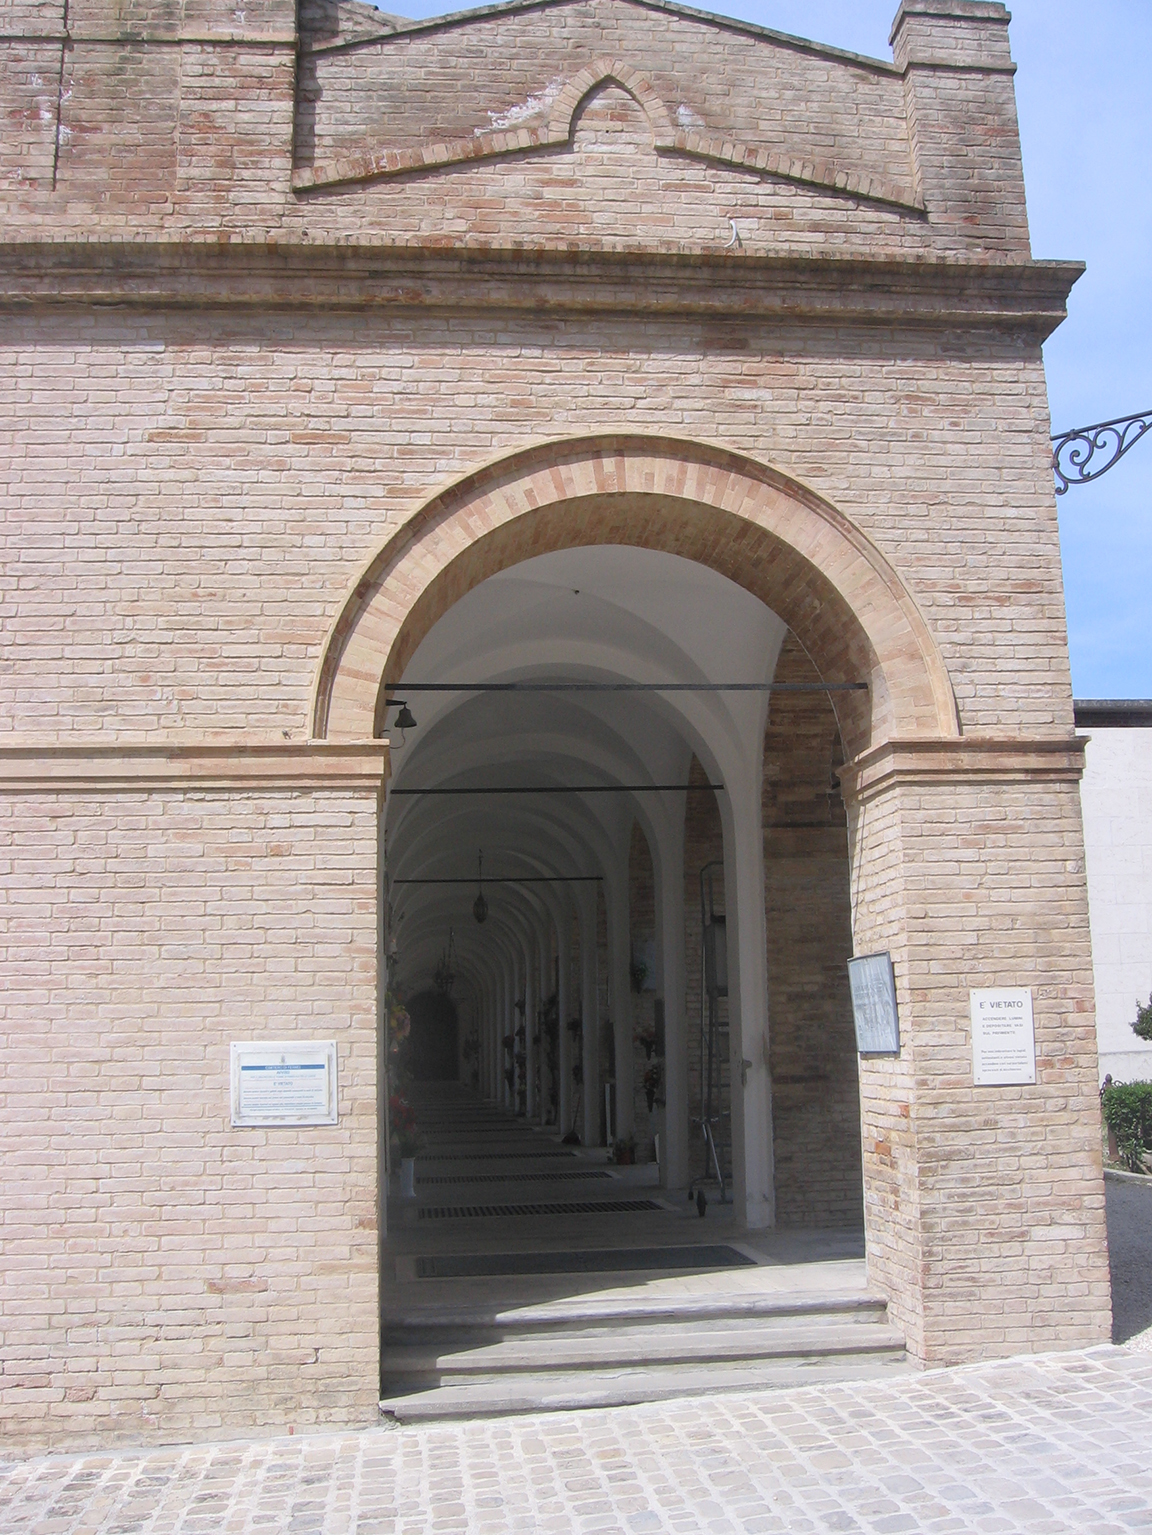 Cimitero civico di Fermo (cimitero, monumentale) - Fermo (FM) 